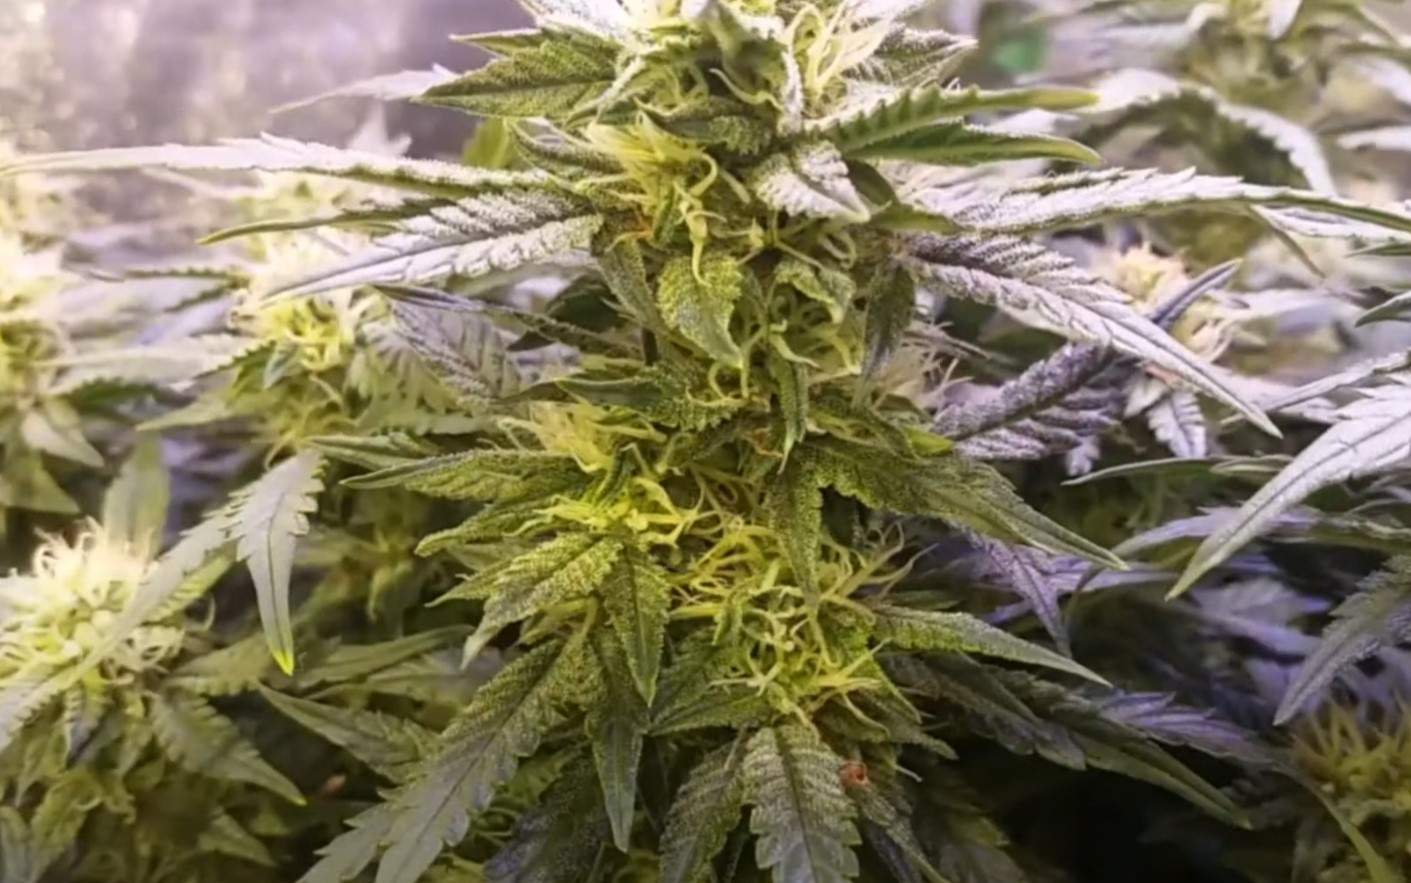 Nice cannabis plant